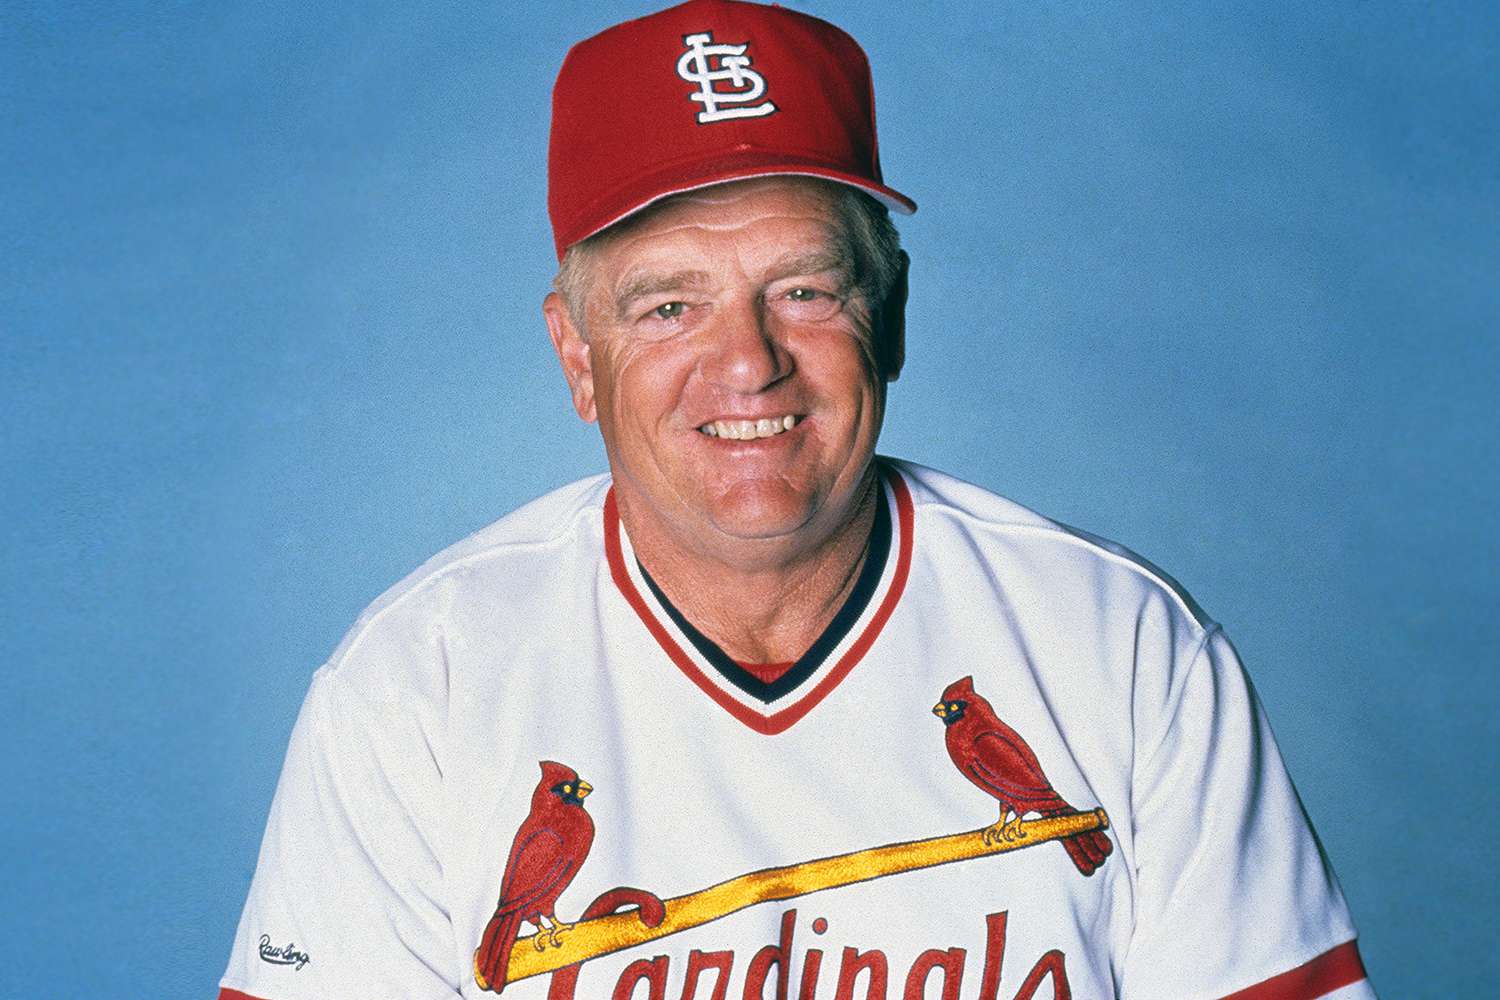 Der legendäre Cardinals-Manager Whitey Herzog ist im Alter von 92 Jahren gestorben